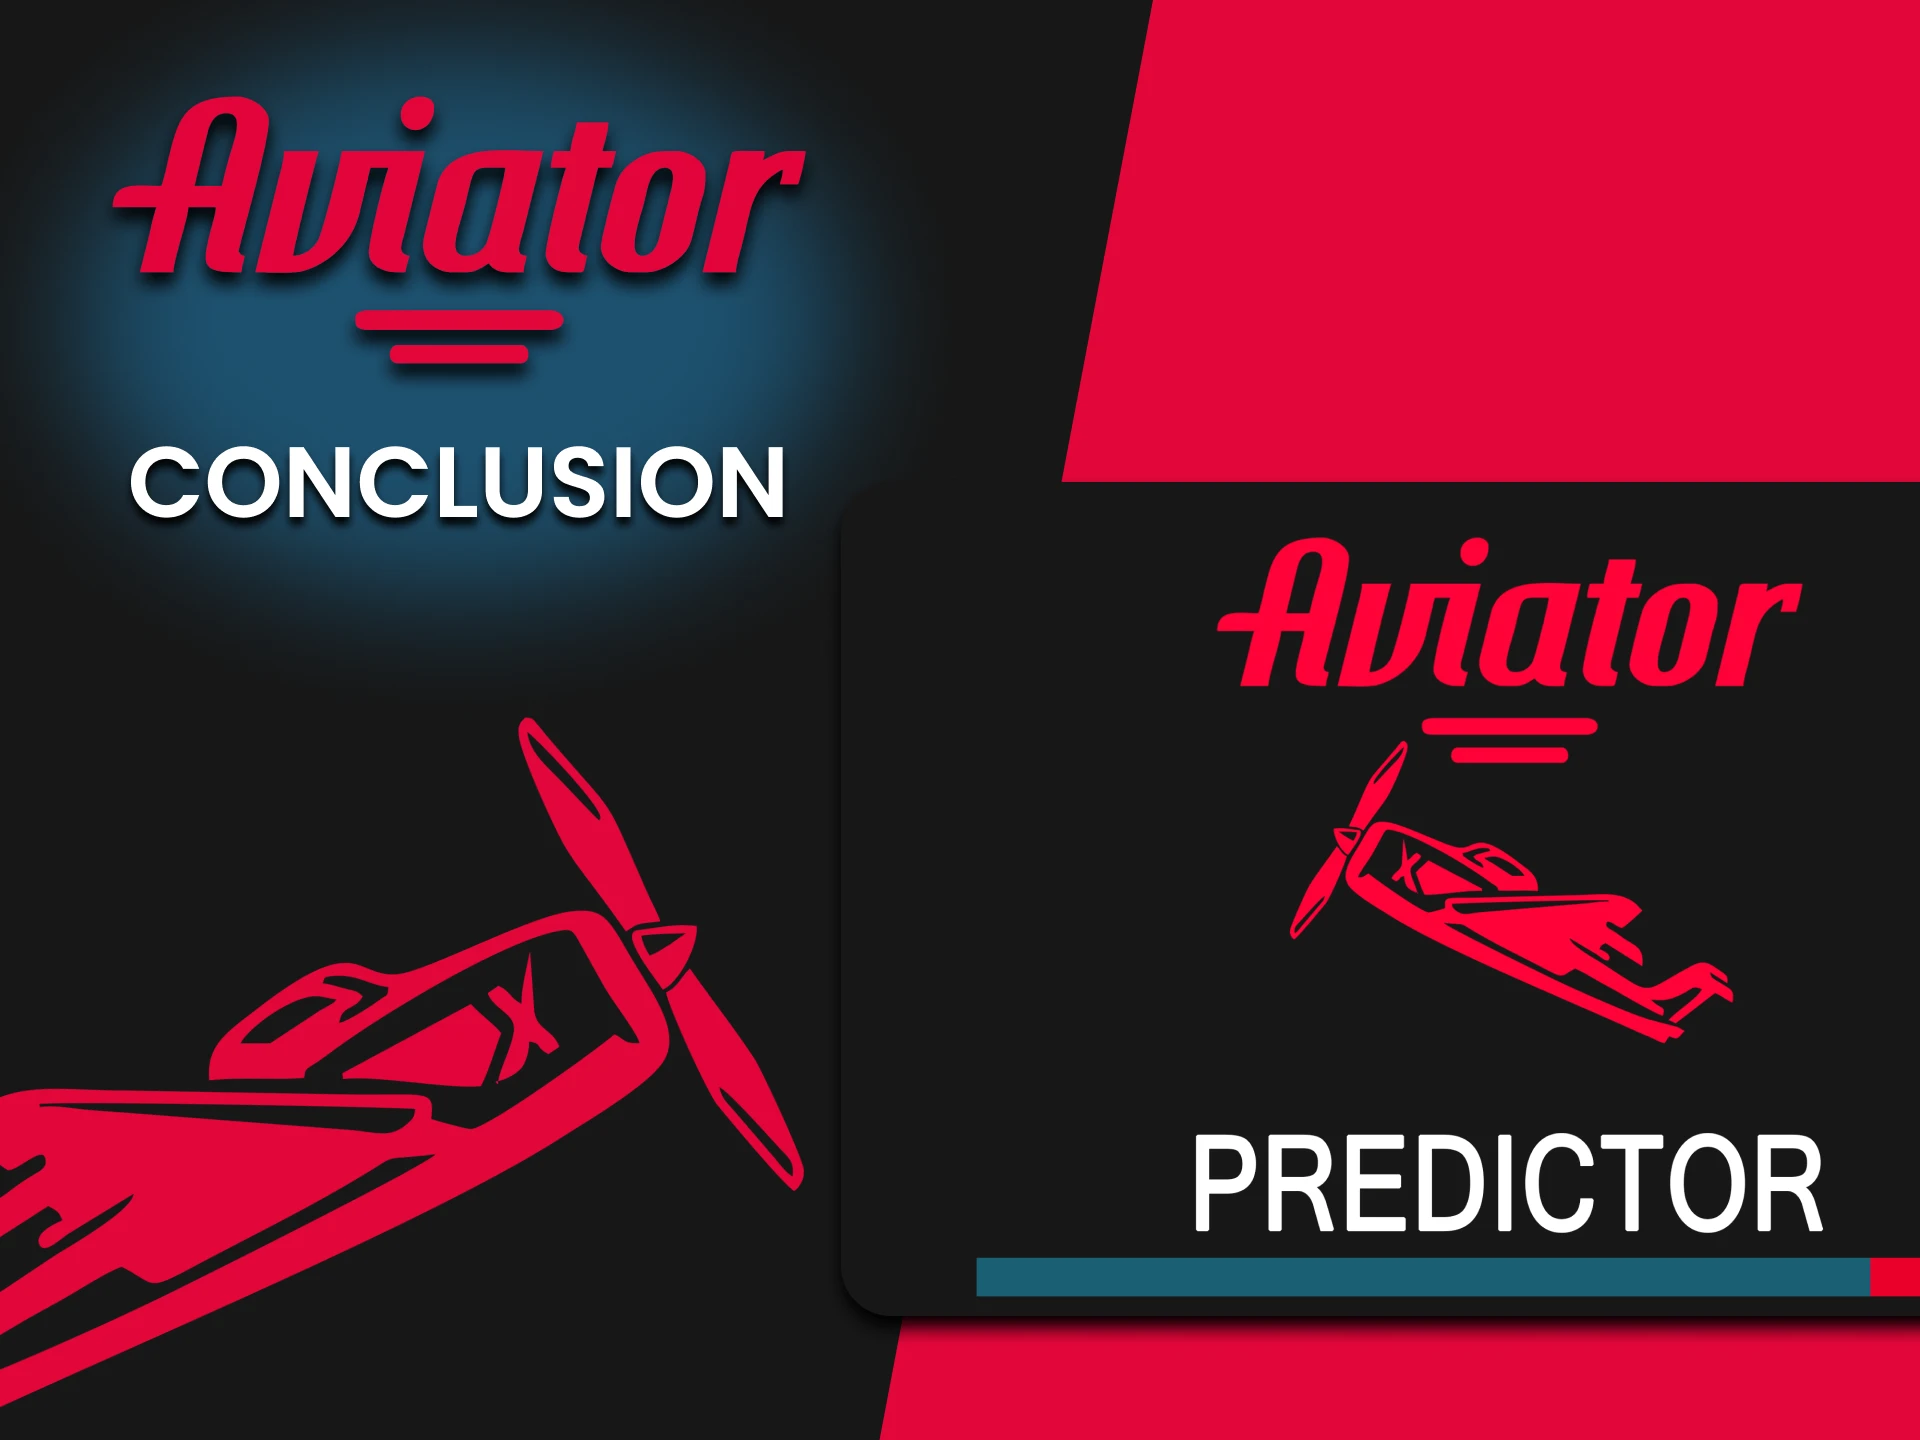 Utiliser Predictor pour jouer à Aviator est l'affaire de tous.